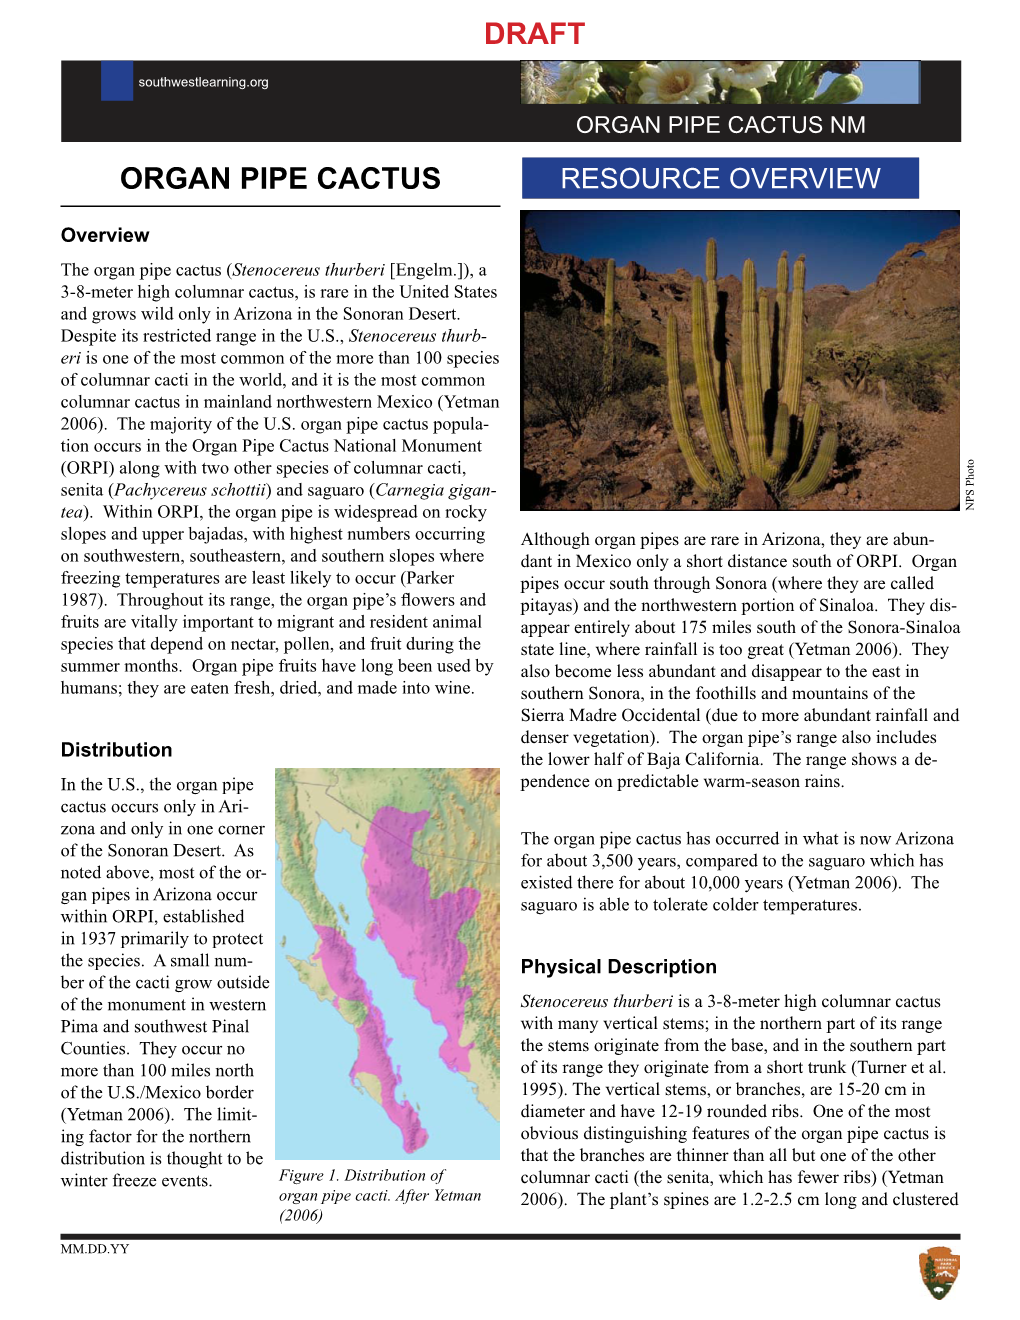 Organ Pipe Cactus Draft